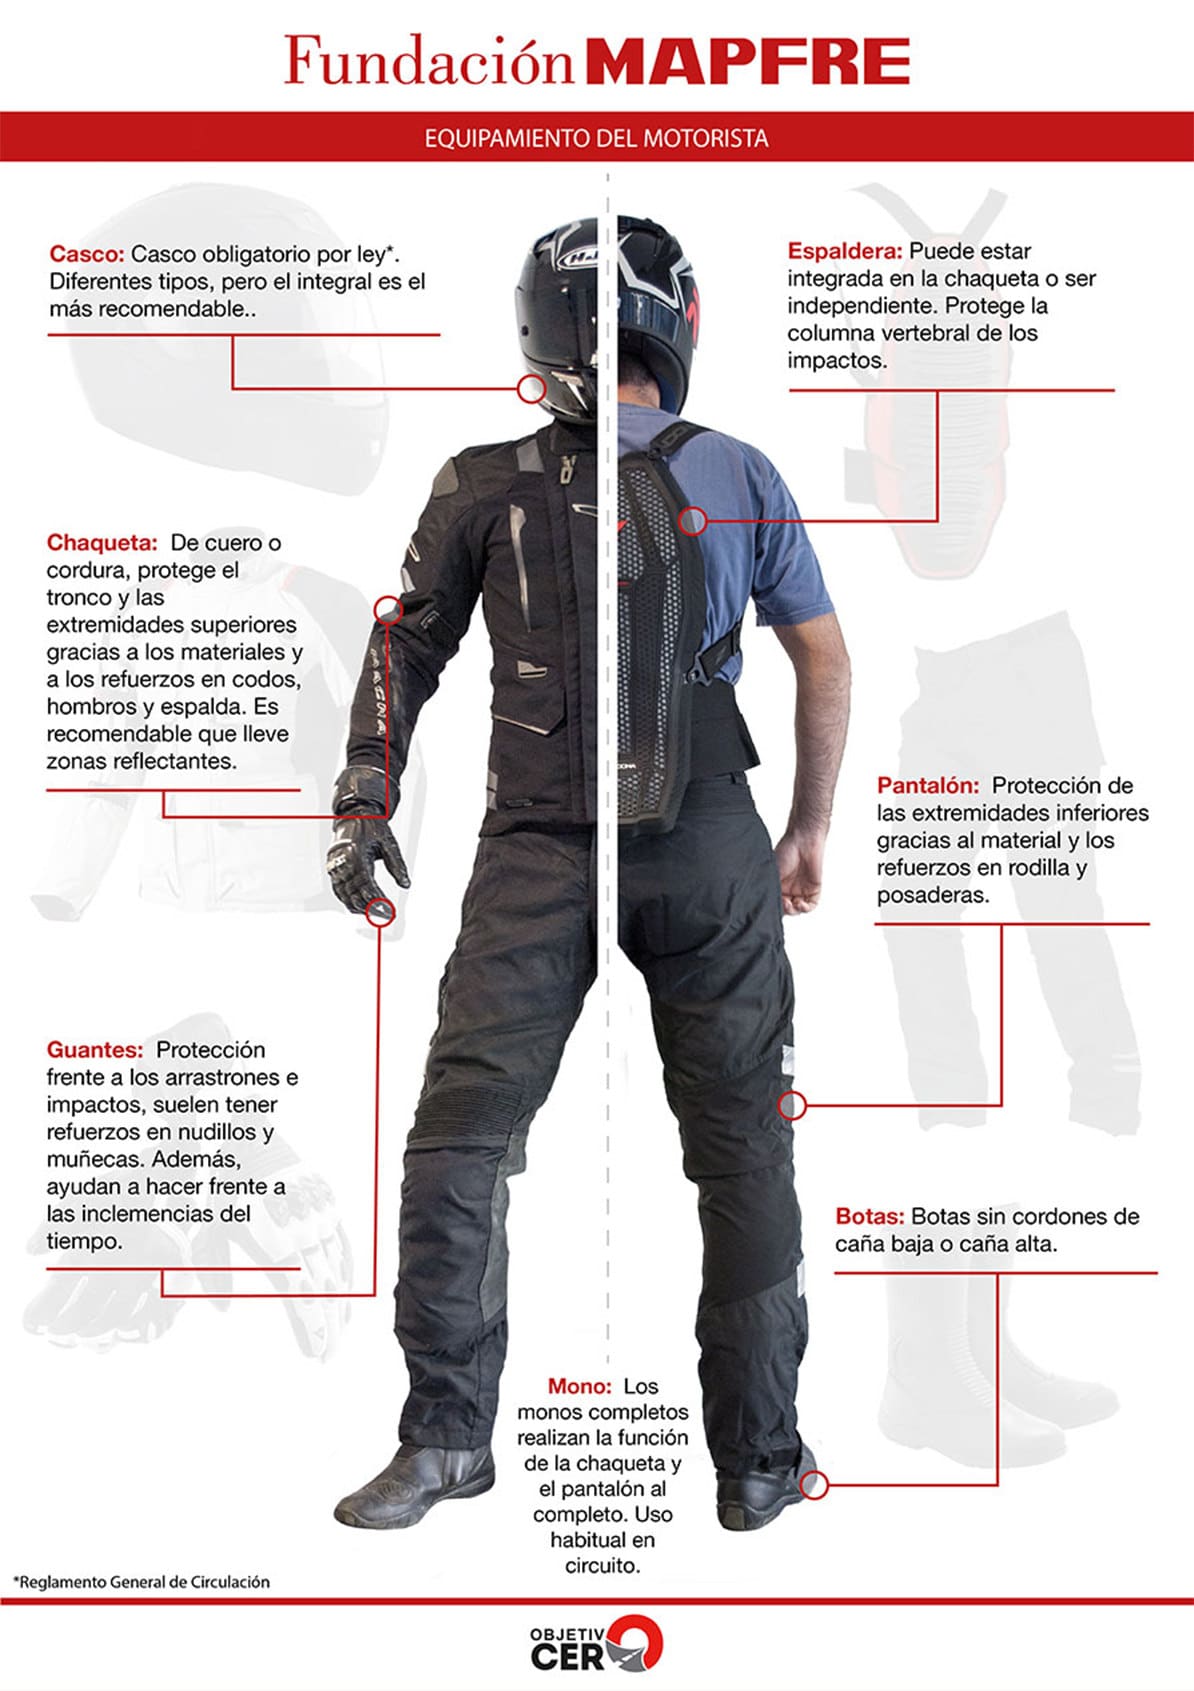 Infografía donde podrás encontrar el equipamiento necesario para estar protegido en moto